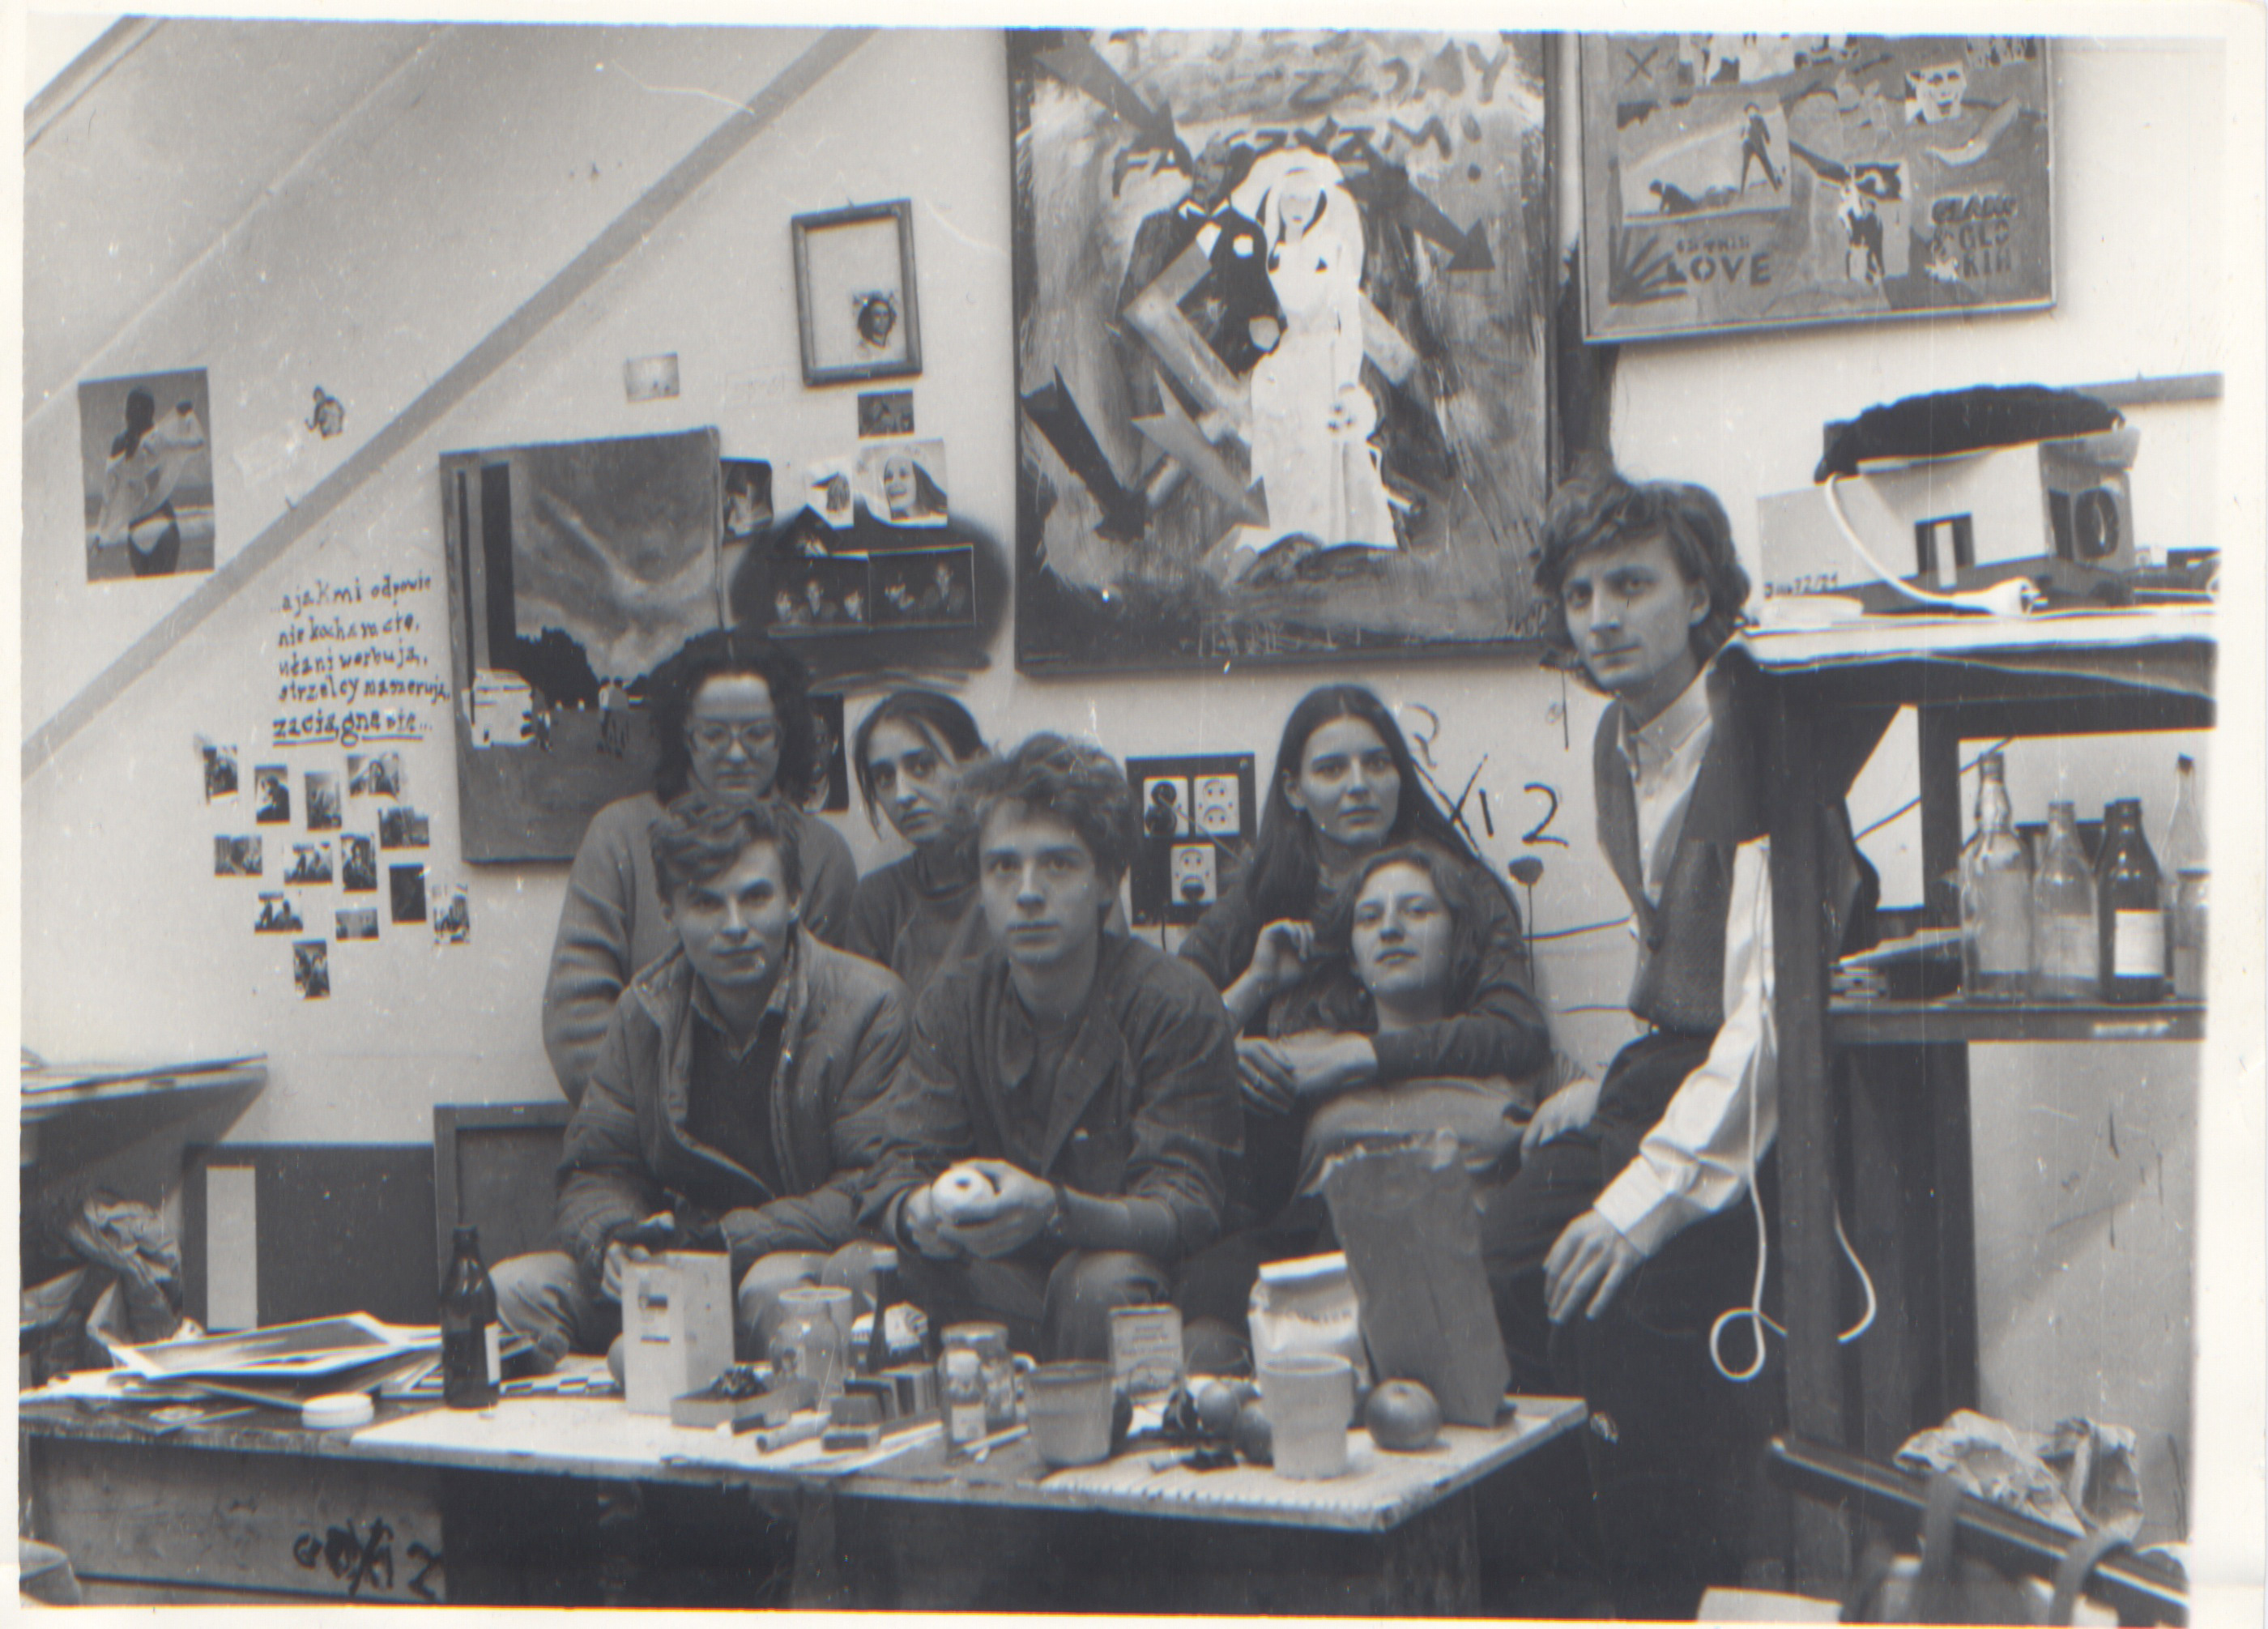 Studenci w pracowni 314, (od lewej:) Anna Bujwid, Małgorzata Mazur, Bożena Grzyb, Andrzej Dakszewicz, (poniżej:) Stanisław Sasak, Piotr Gusta, Ewa Ciepielewska, 1983